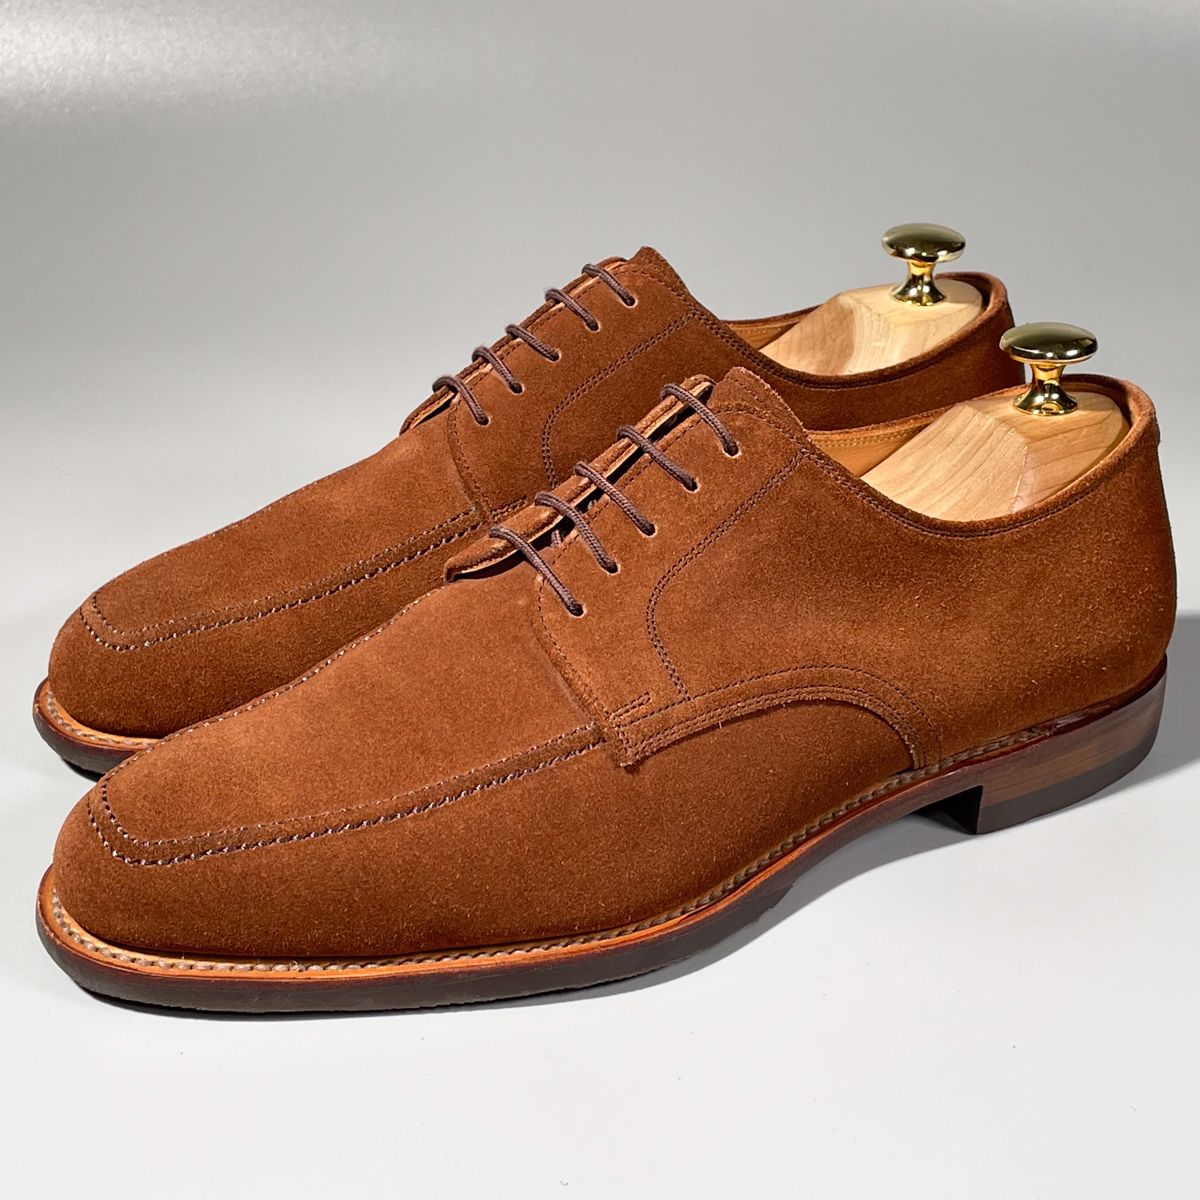 トップ 革靴 スエード 本革 メンズ 茶色 ブラウン Uチップ スコッチグレイン GRAIN SCOTCH 即決 25cm A1755 紳士靴 フォーマル ビジネスシューズ 25.0cm